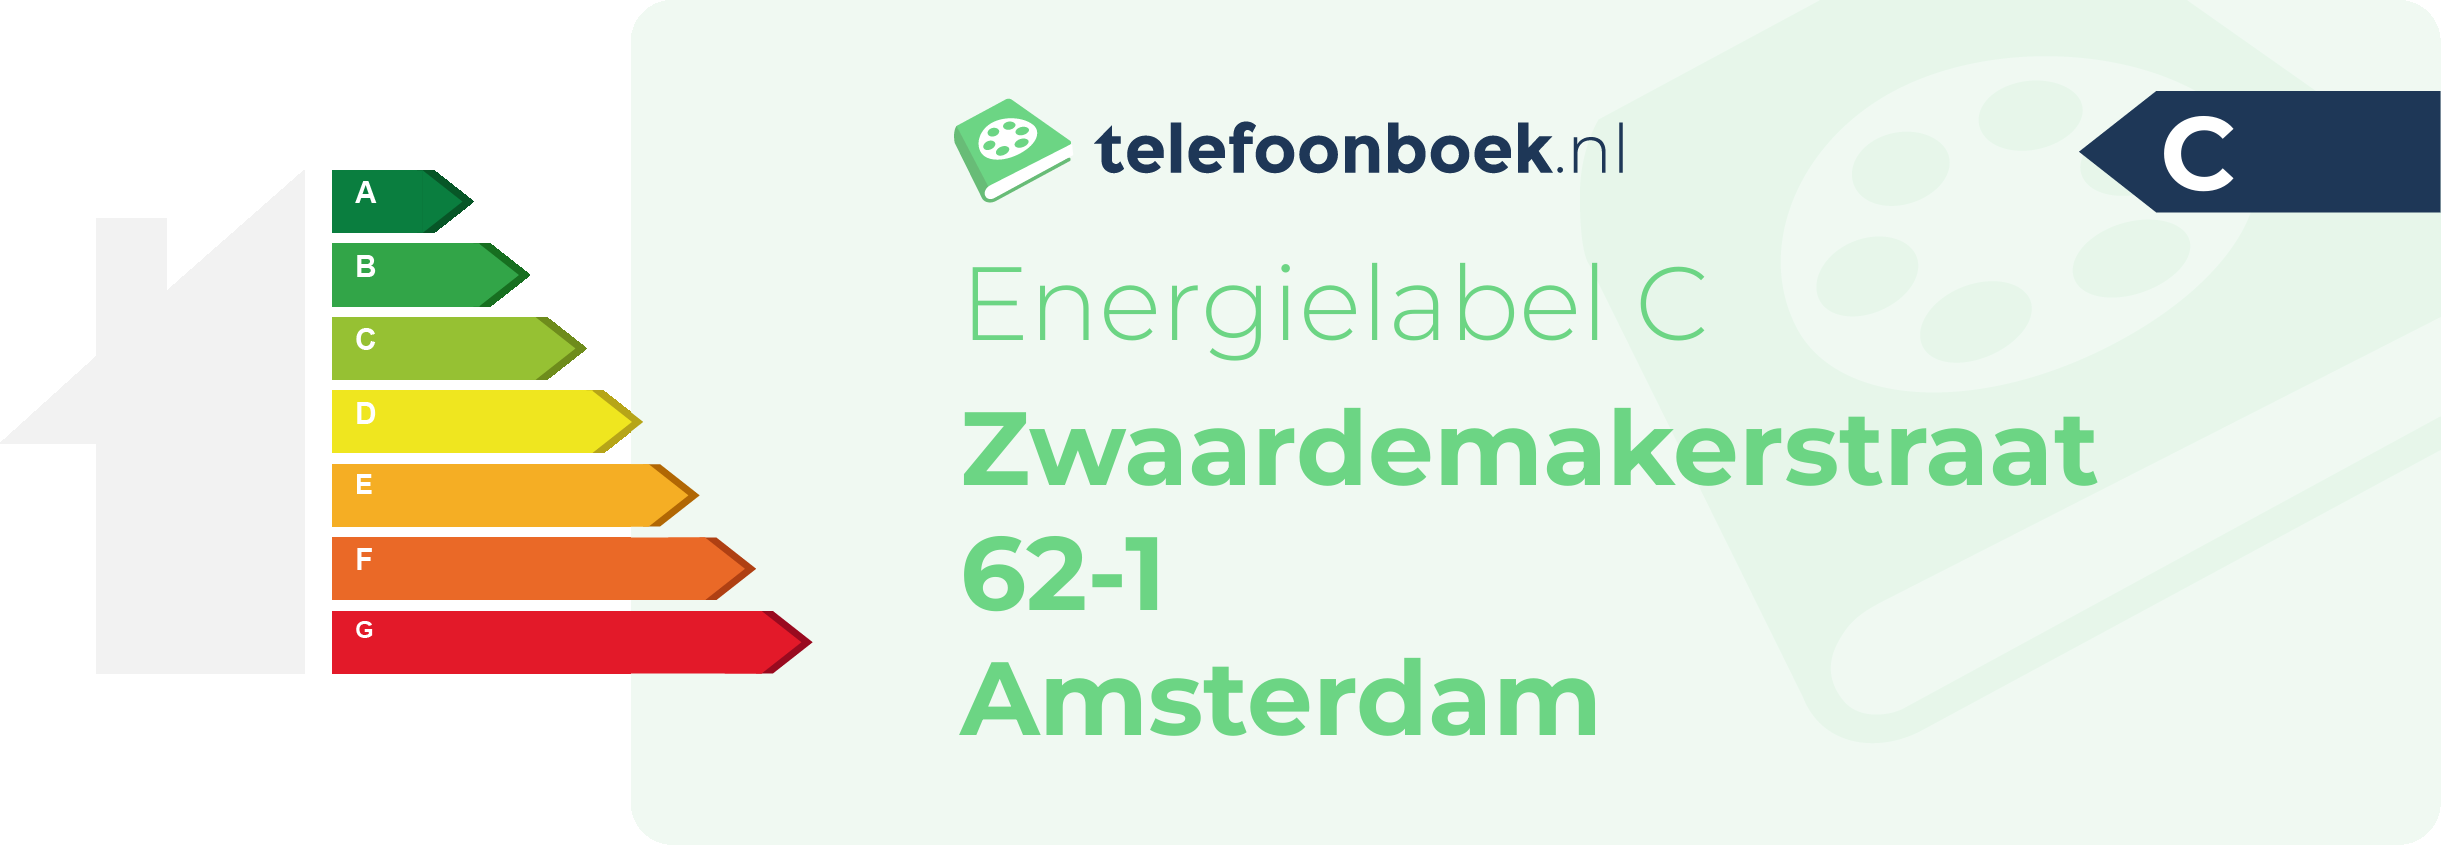 Energielabel Zwaardemakerstraat 62-1 Amsterdam